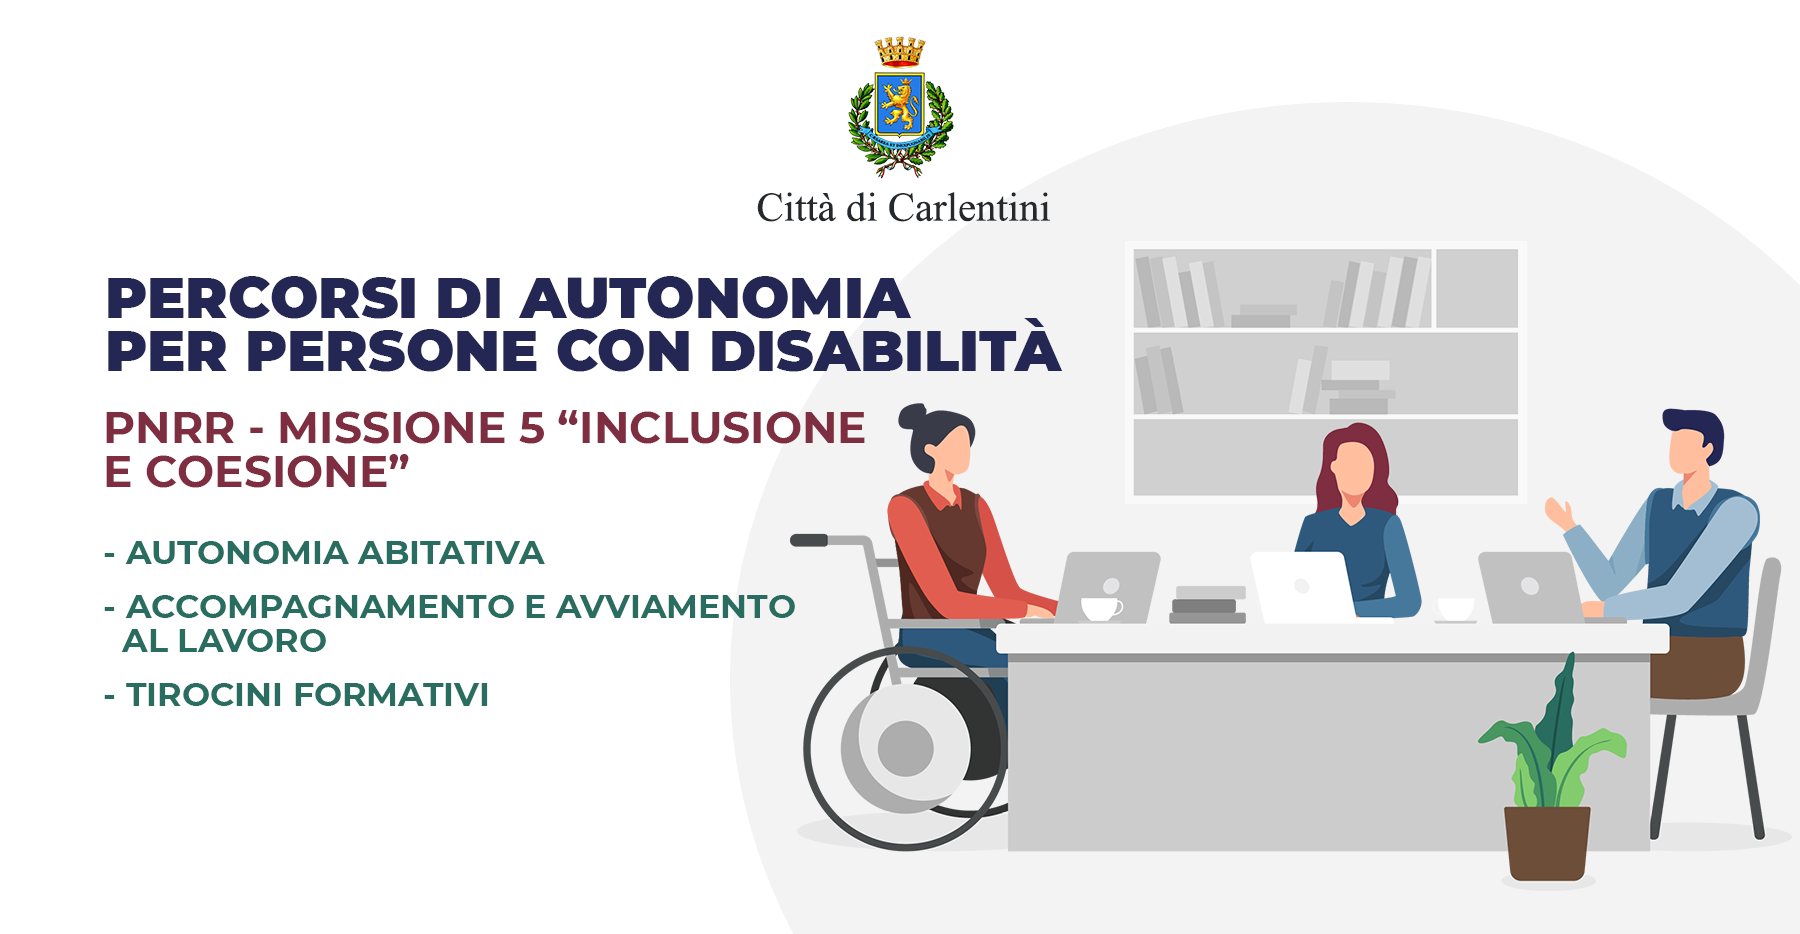 PNRR missione 5 “Inclusione e coesione”: Percorso di autonomia per persone con disabilità